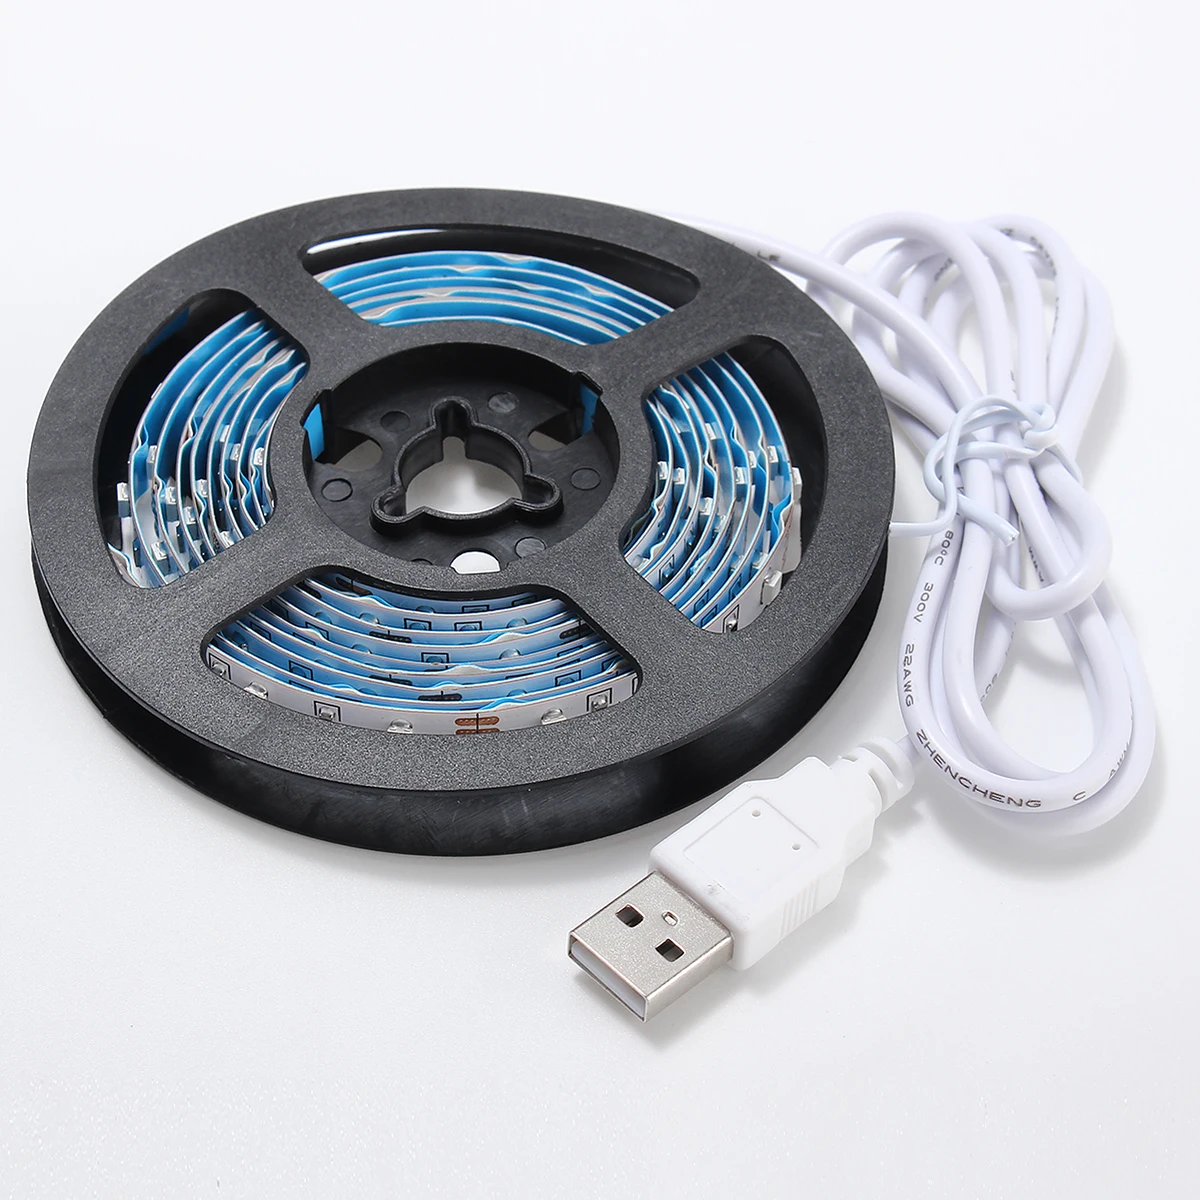 Smuxi 2 м 5 В USB кабель Светодиодные ленты свет лампы SMD3528 Рождество Гибкие Светодиодные ленты e огни ТВ фонового освещения